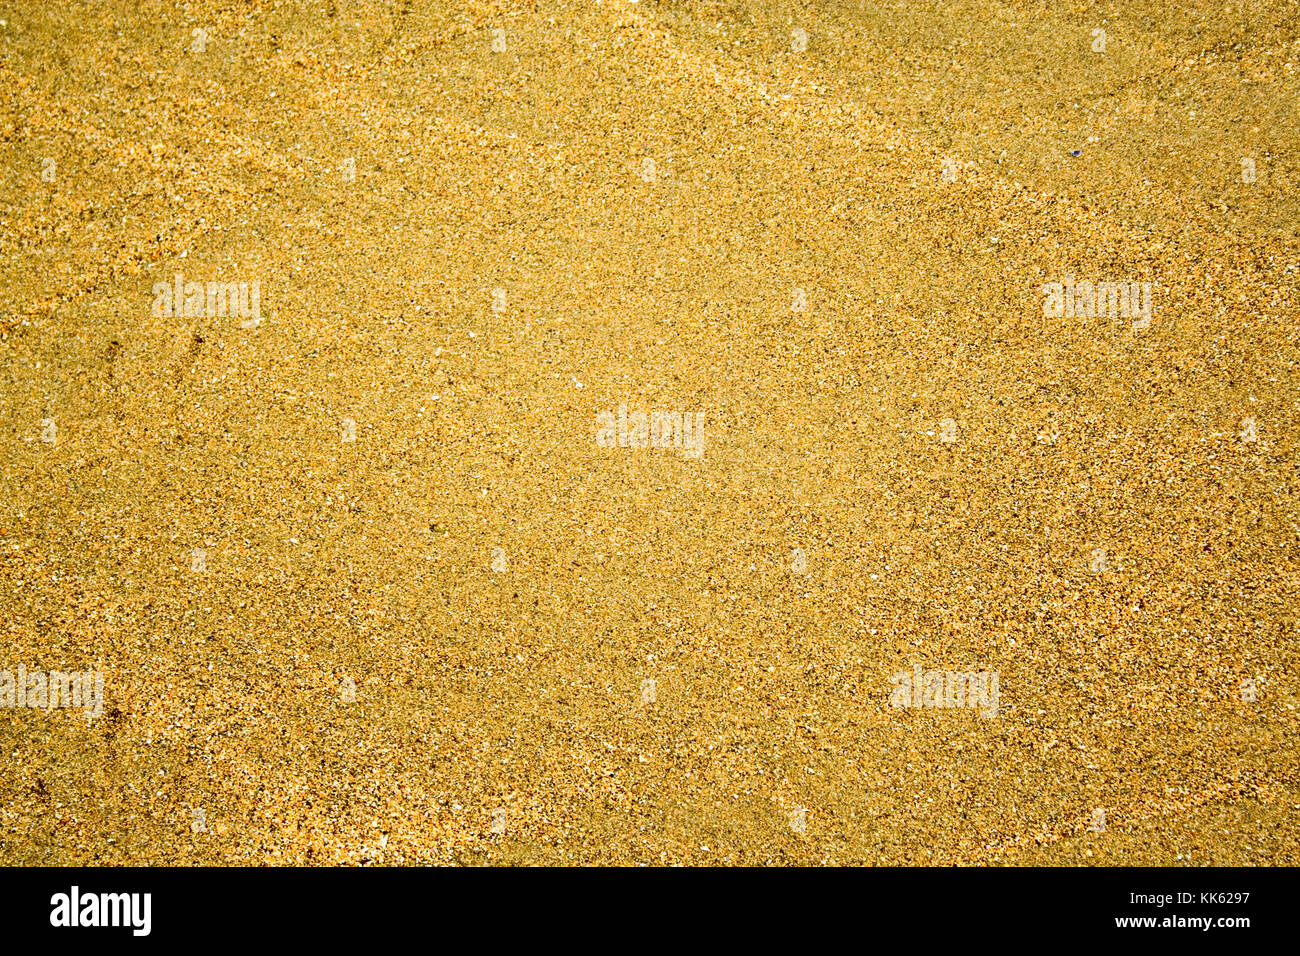 Fond de sable doré dans le cadre. Banque D'Images